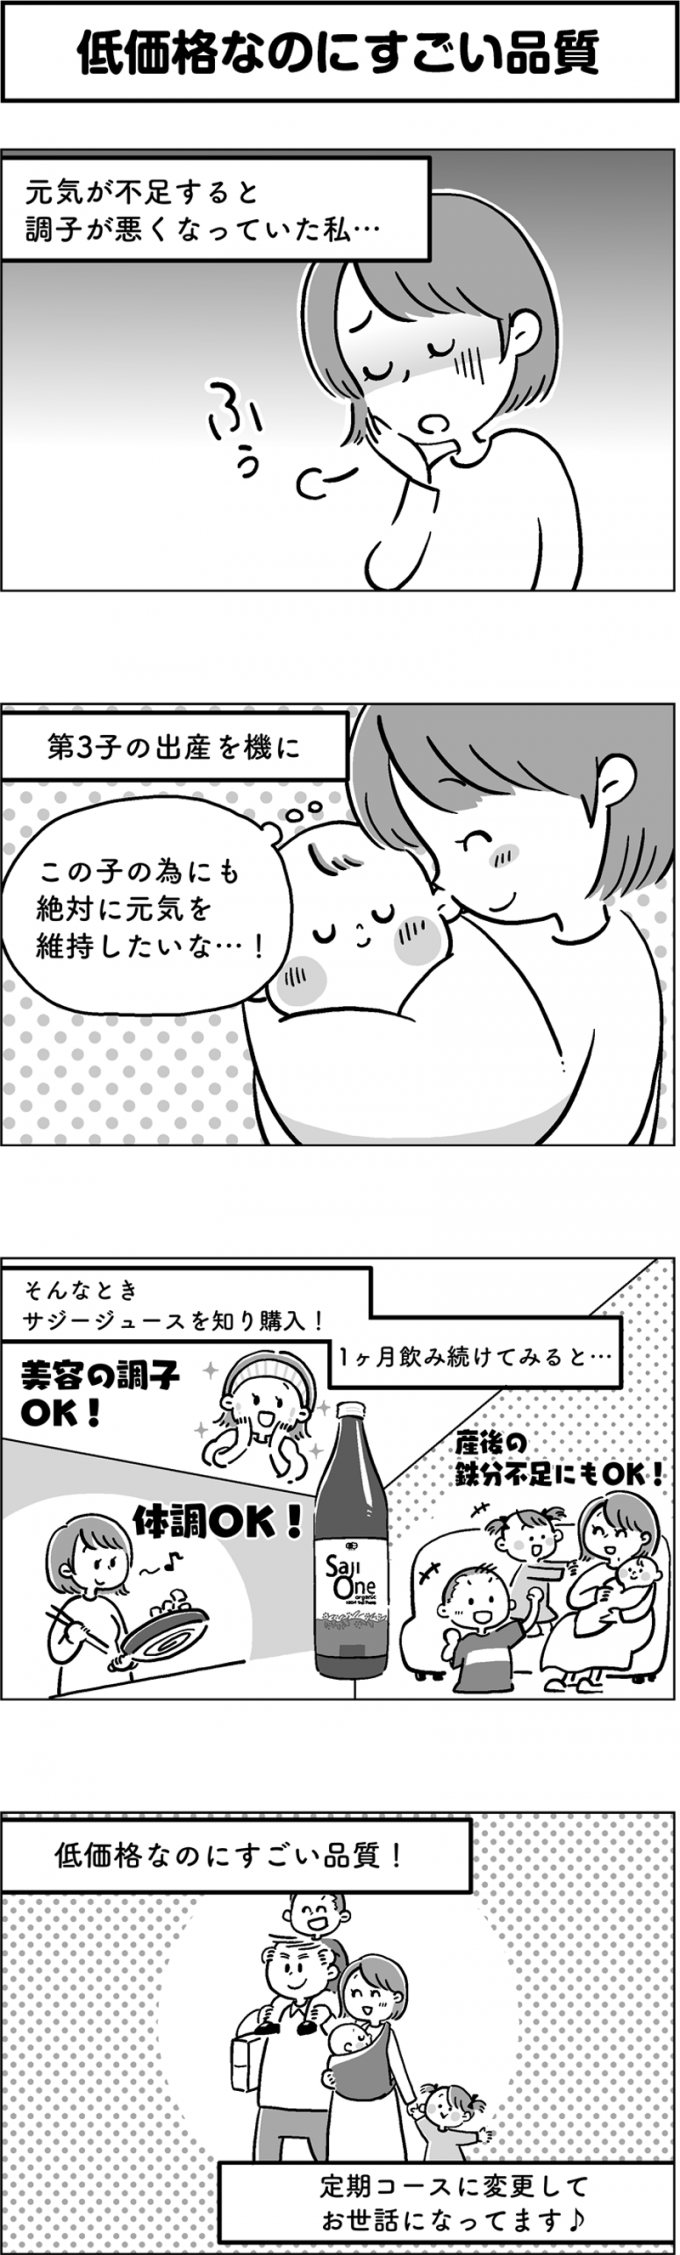 サジージュース「SajiOne」のPR4コマ漫画第1弾の画像2枚目